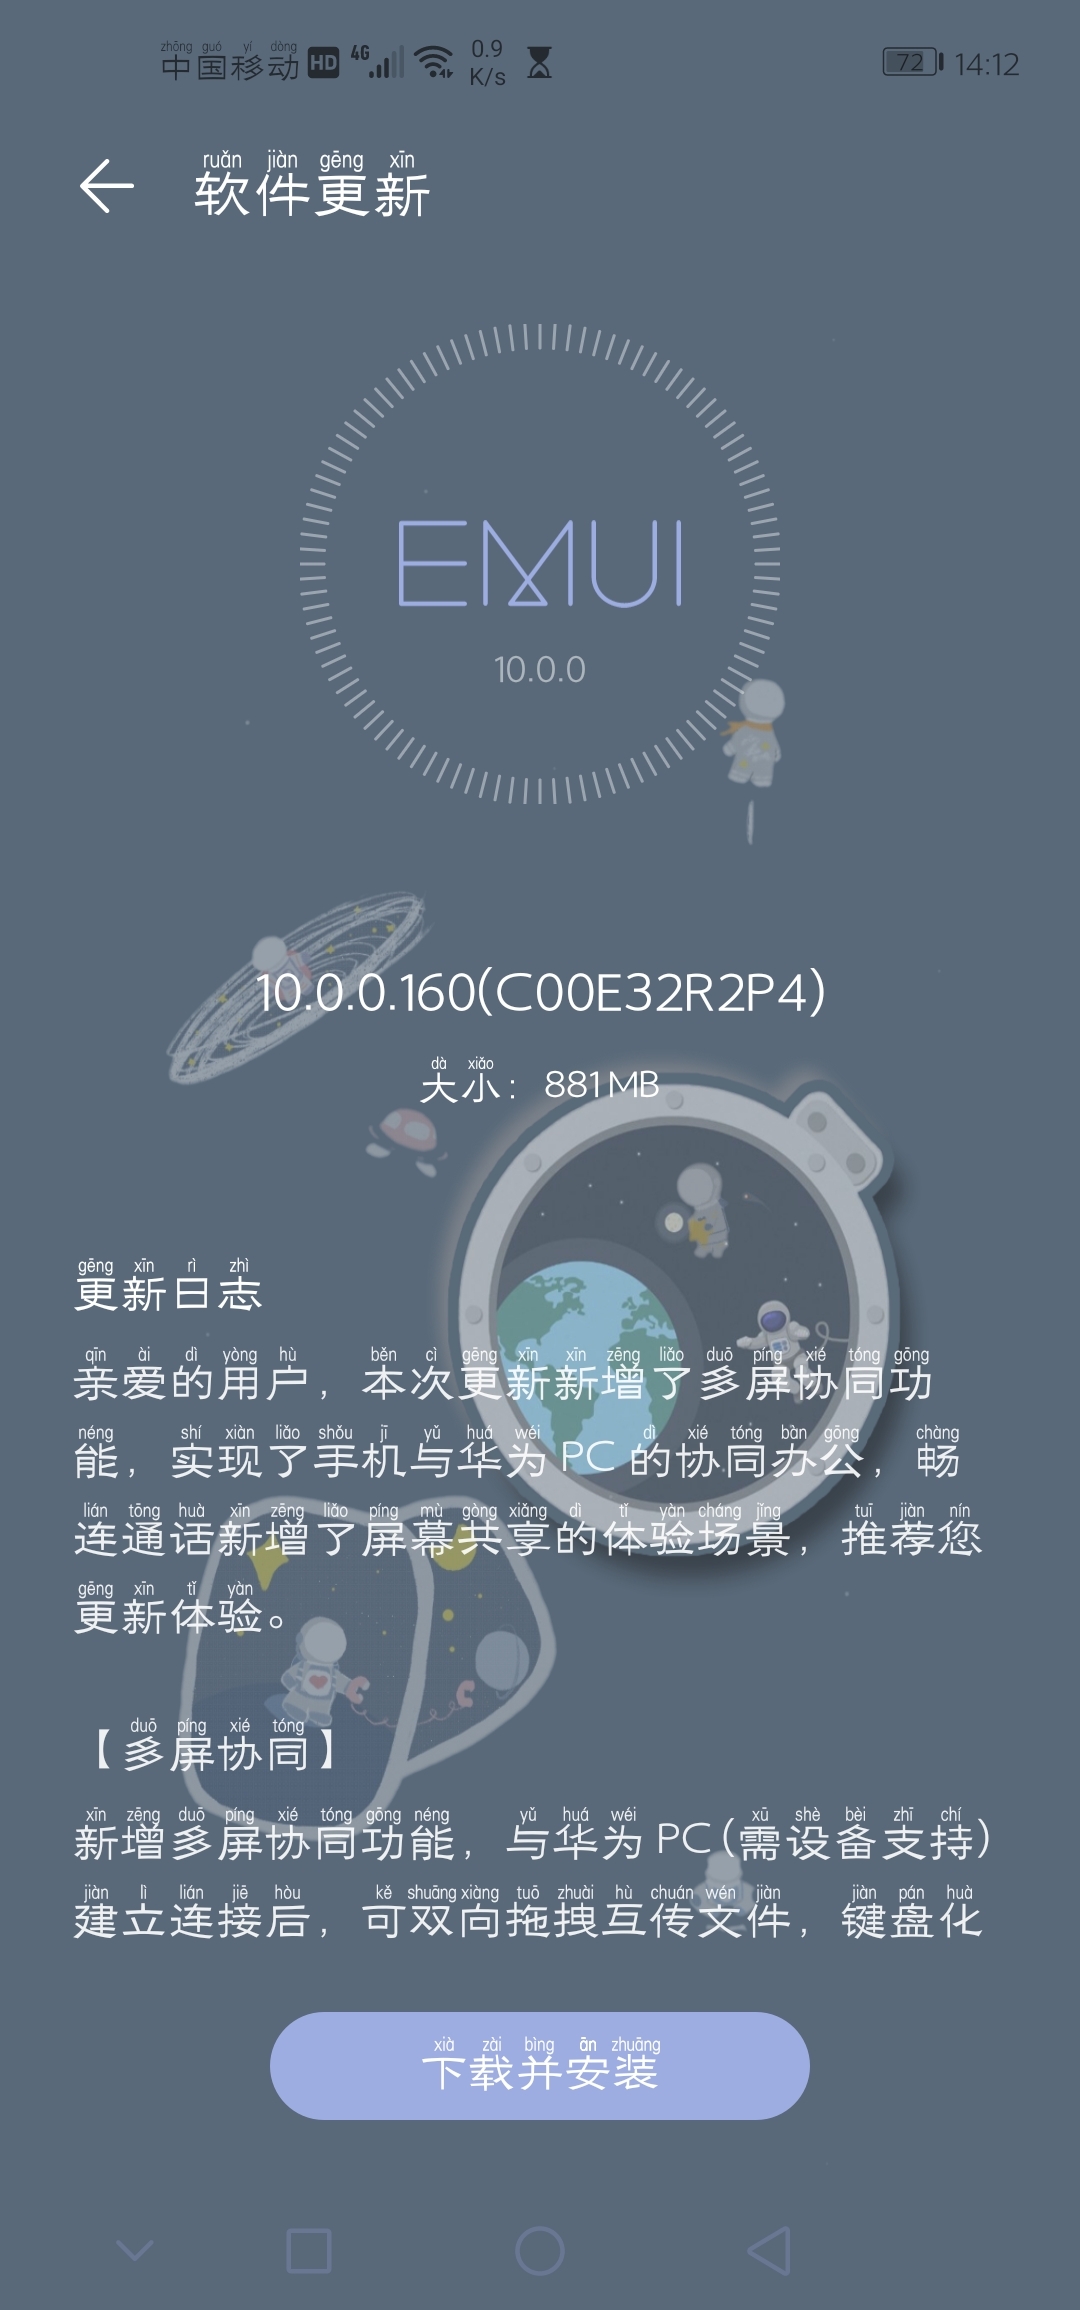 Huawei nova 4 EMUI 10.0.0.160